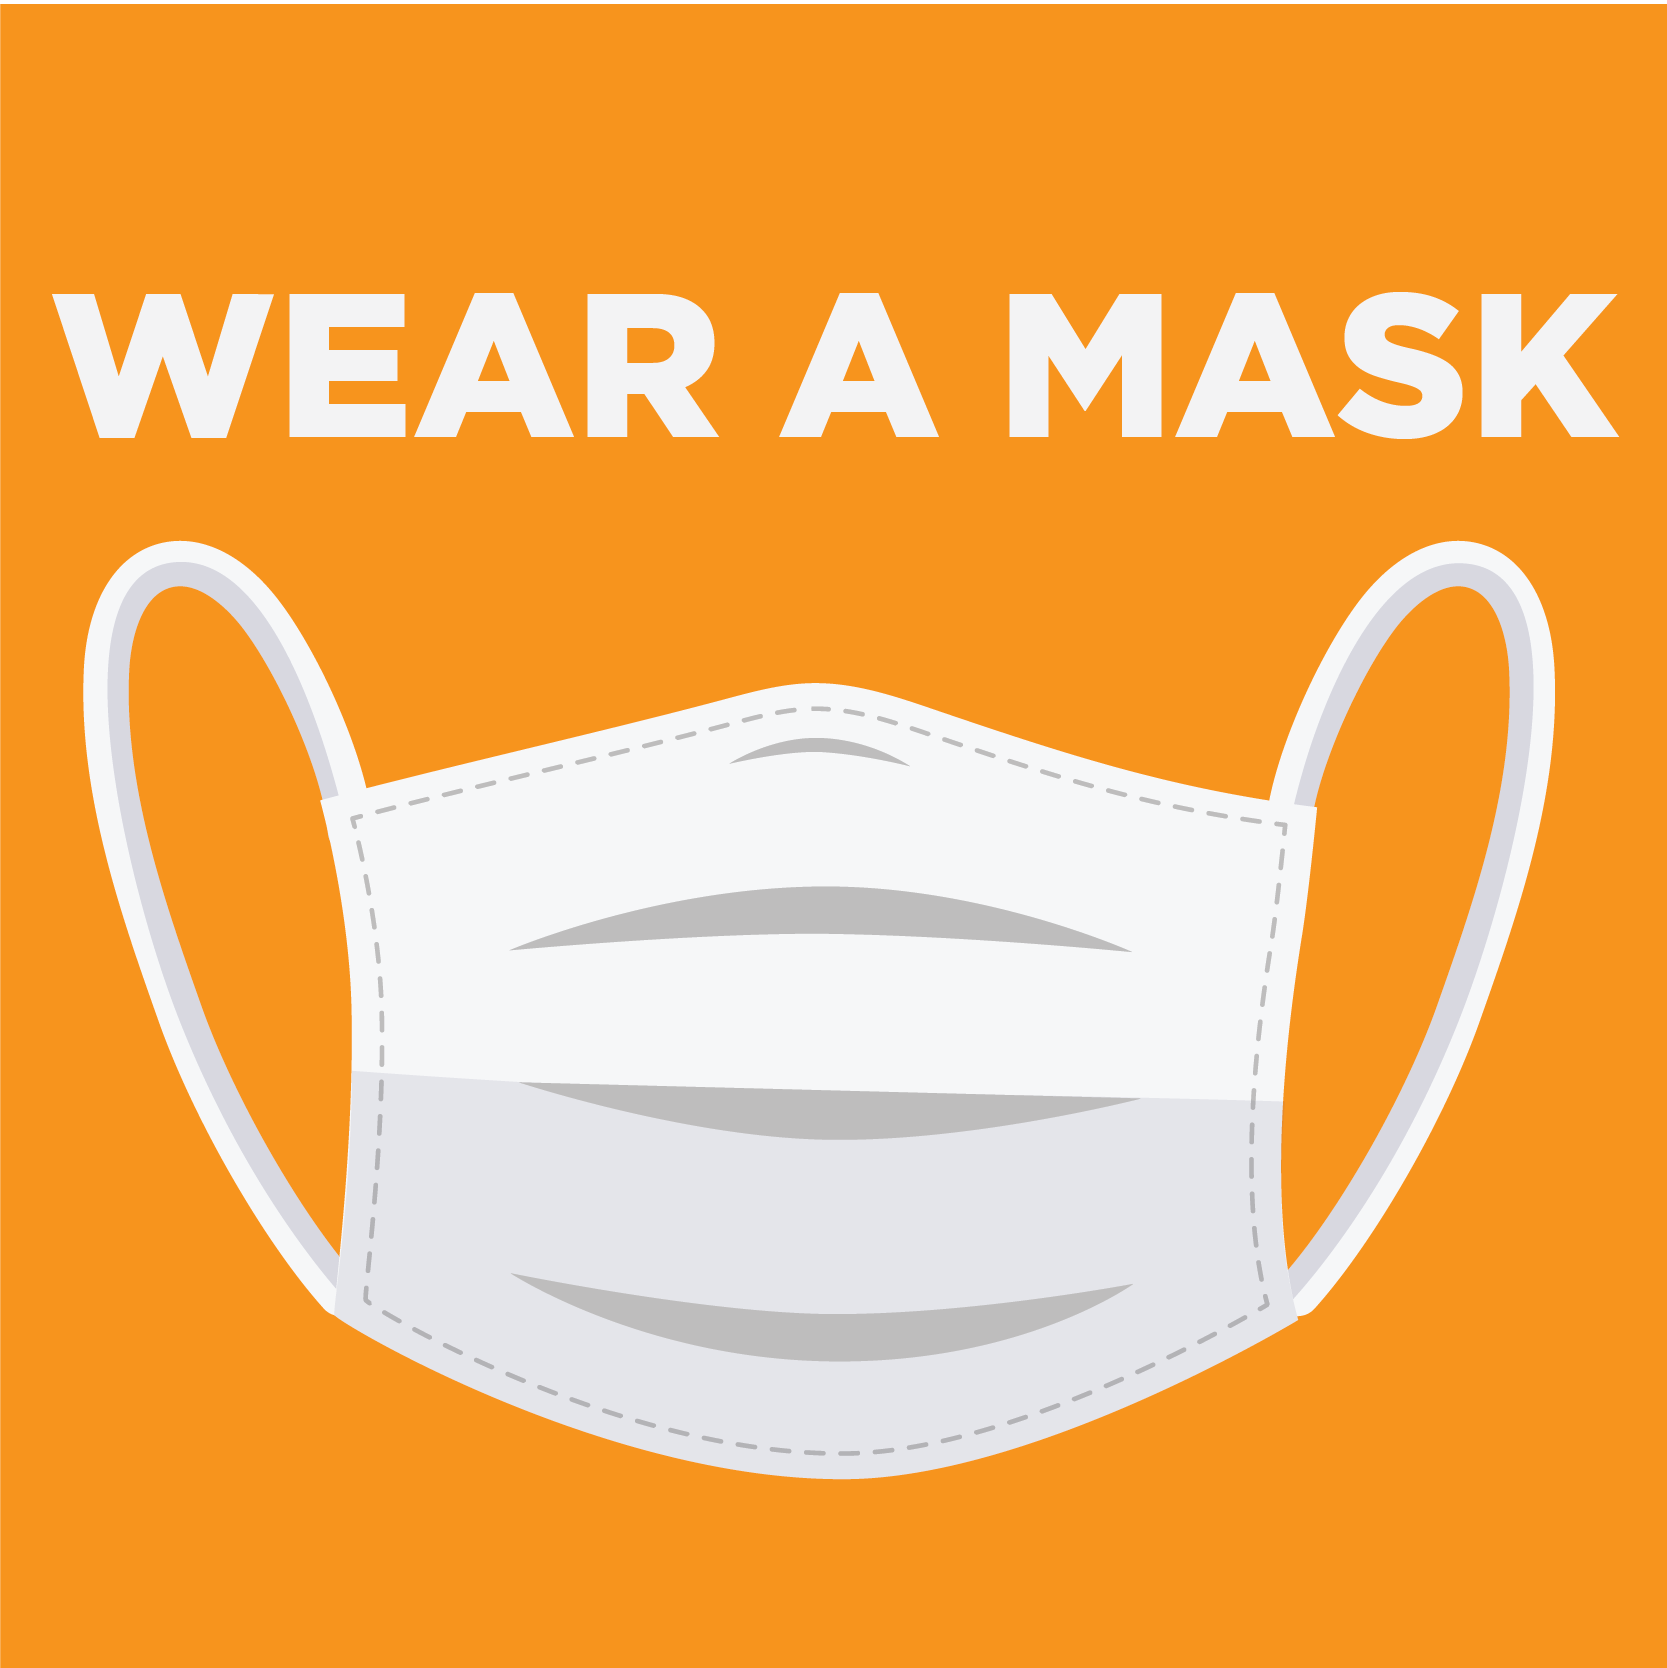 Wear a Mask_4 - Instagram-12